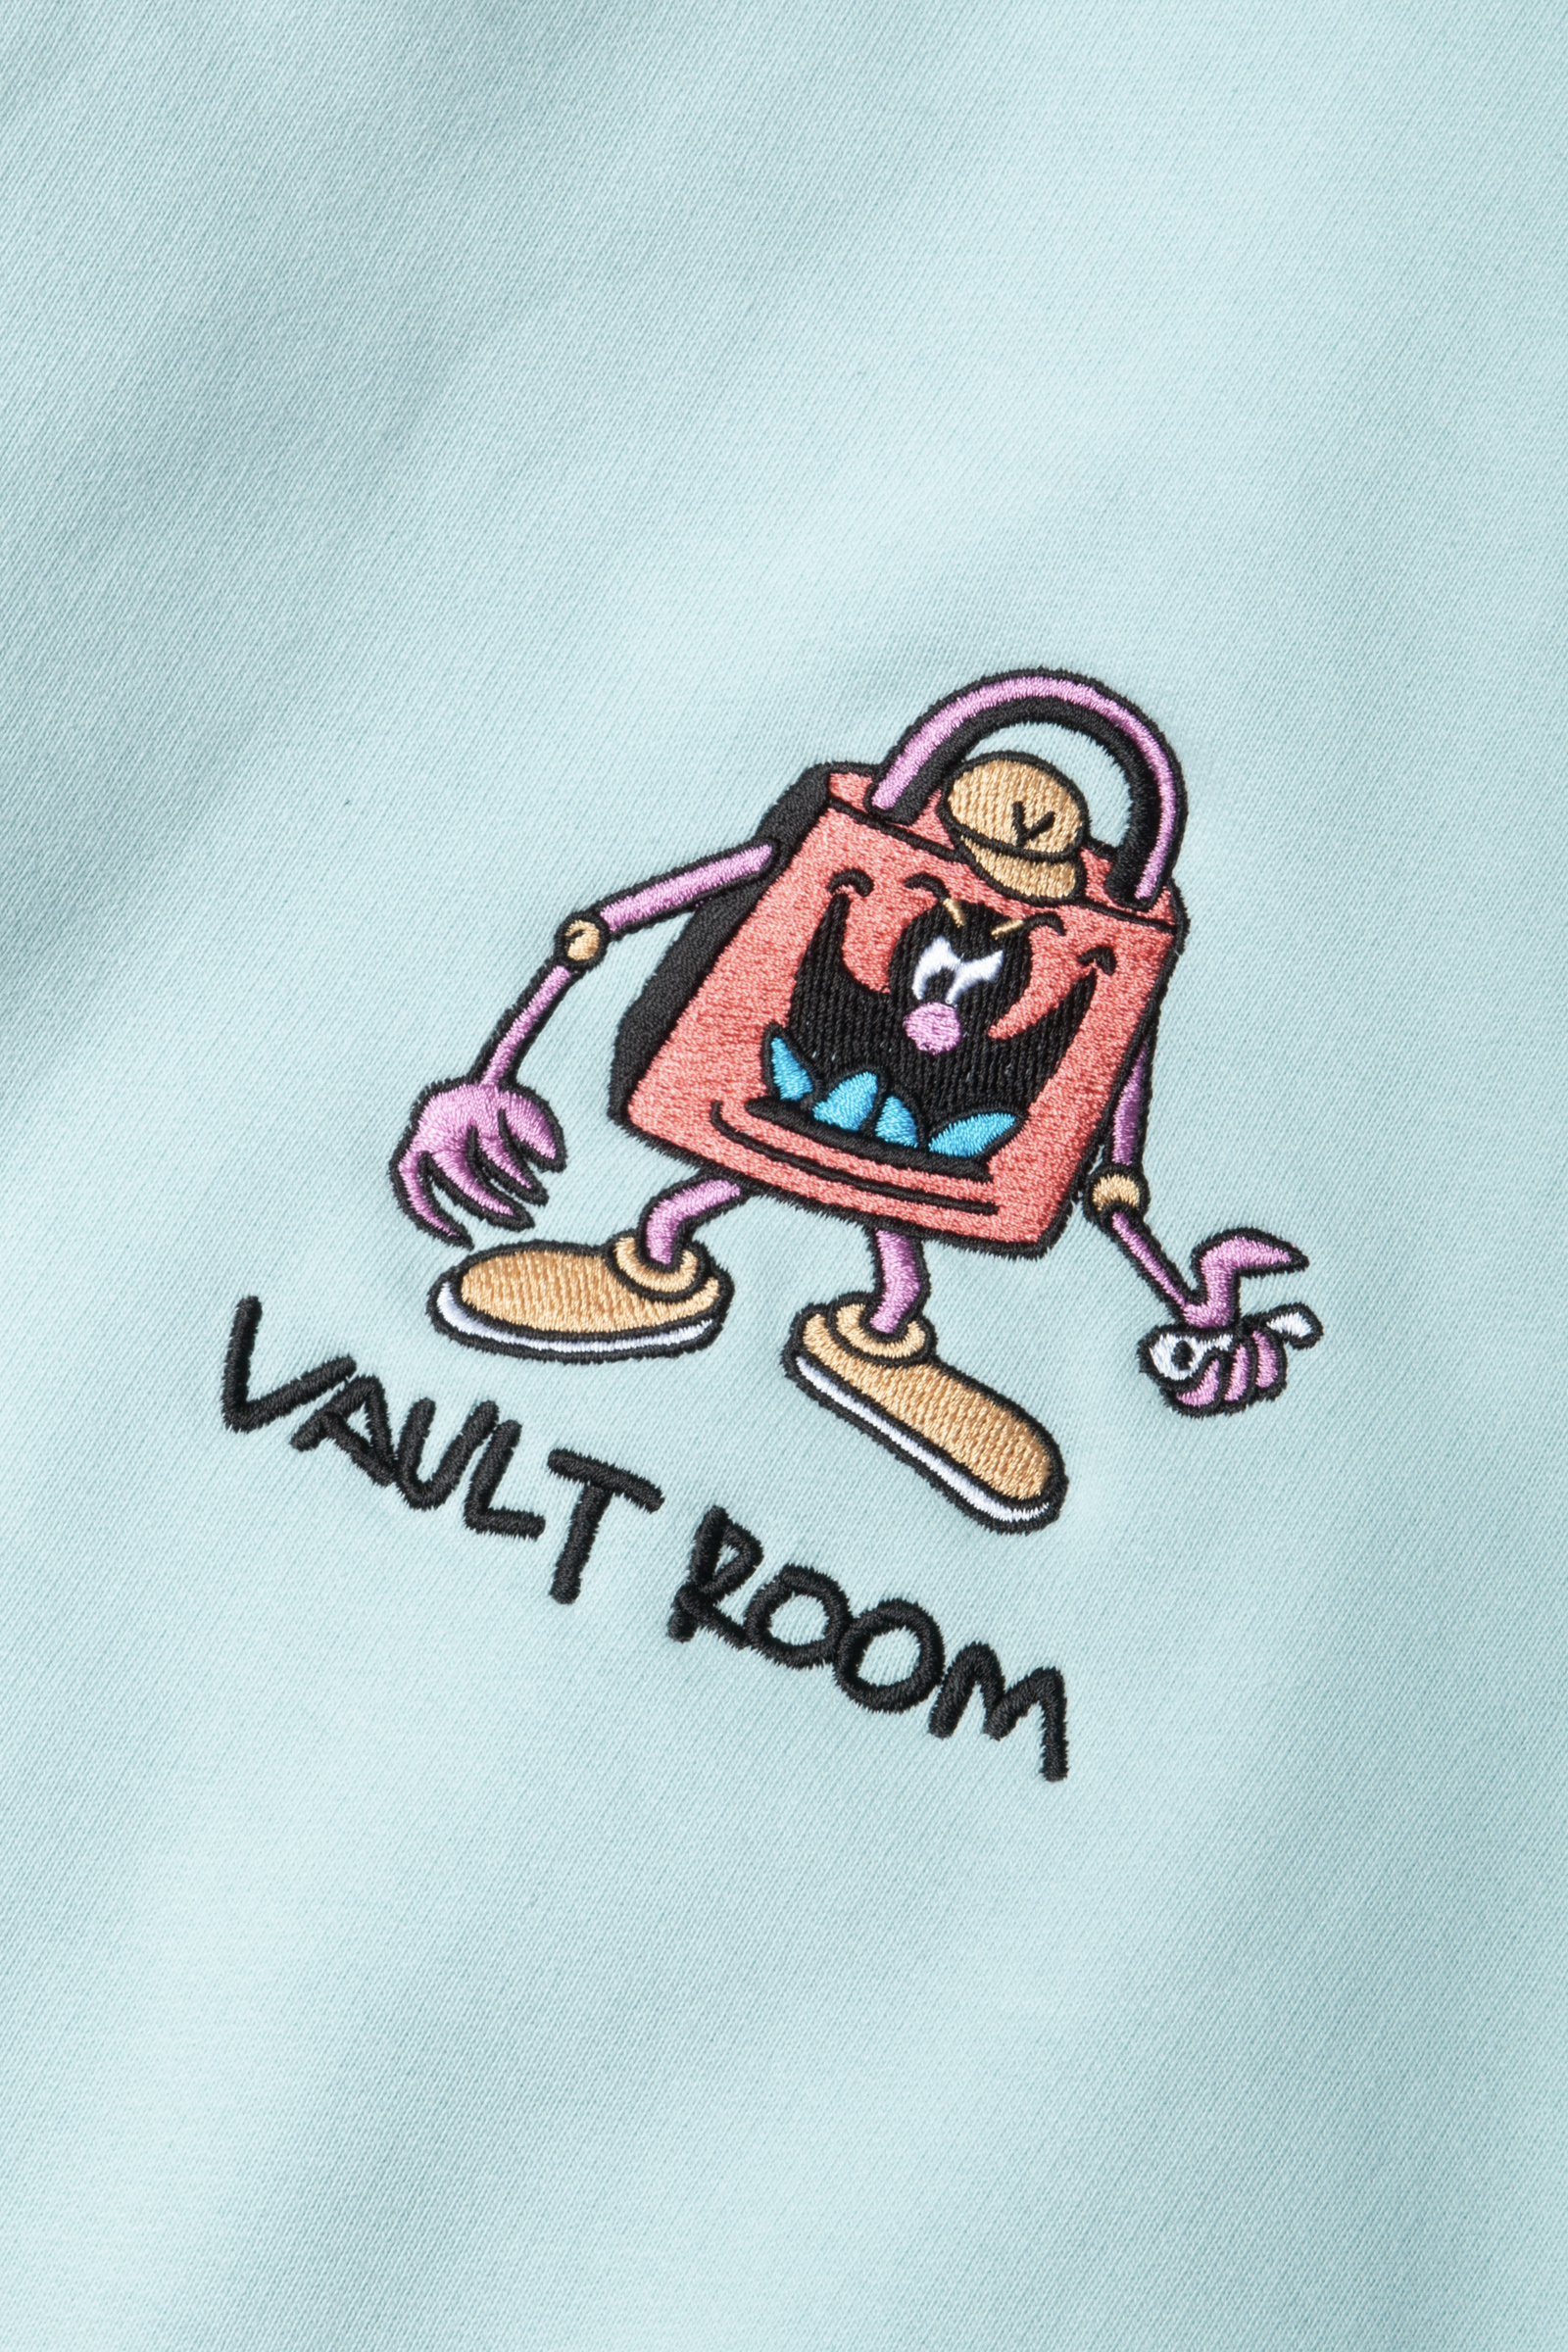 vaultroom パーカー 叶-